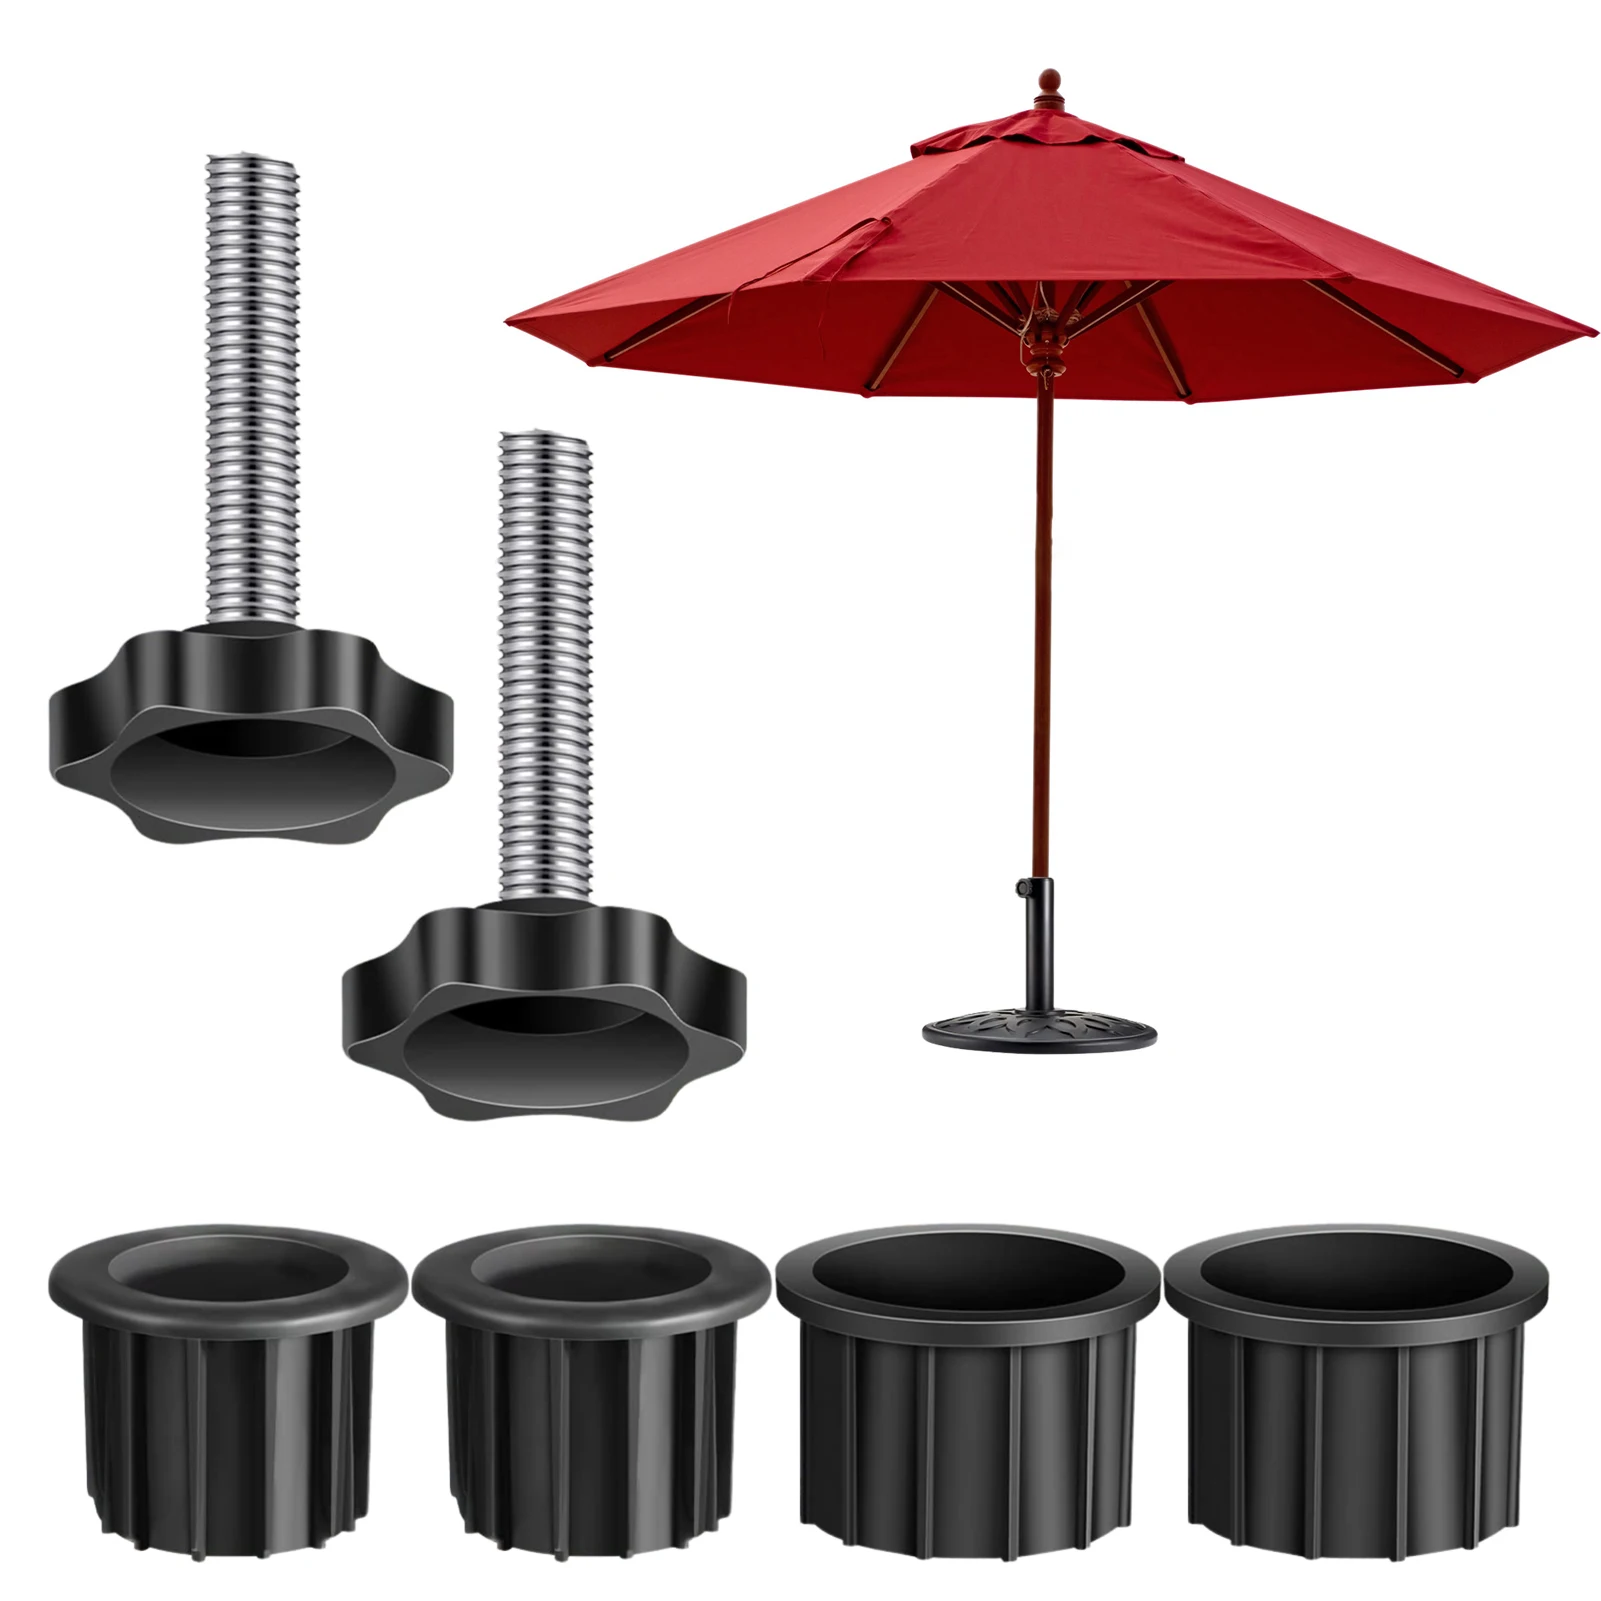 Prefilled Patio Umbrella BaseRound Water Fillable Base Stand Weight for Patio Market Table Umbrella Outdoor Home Garden Decor